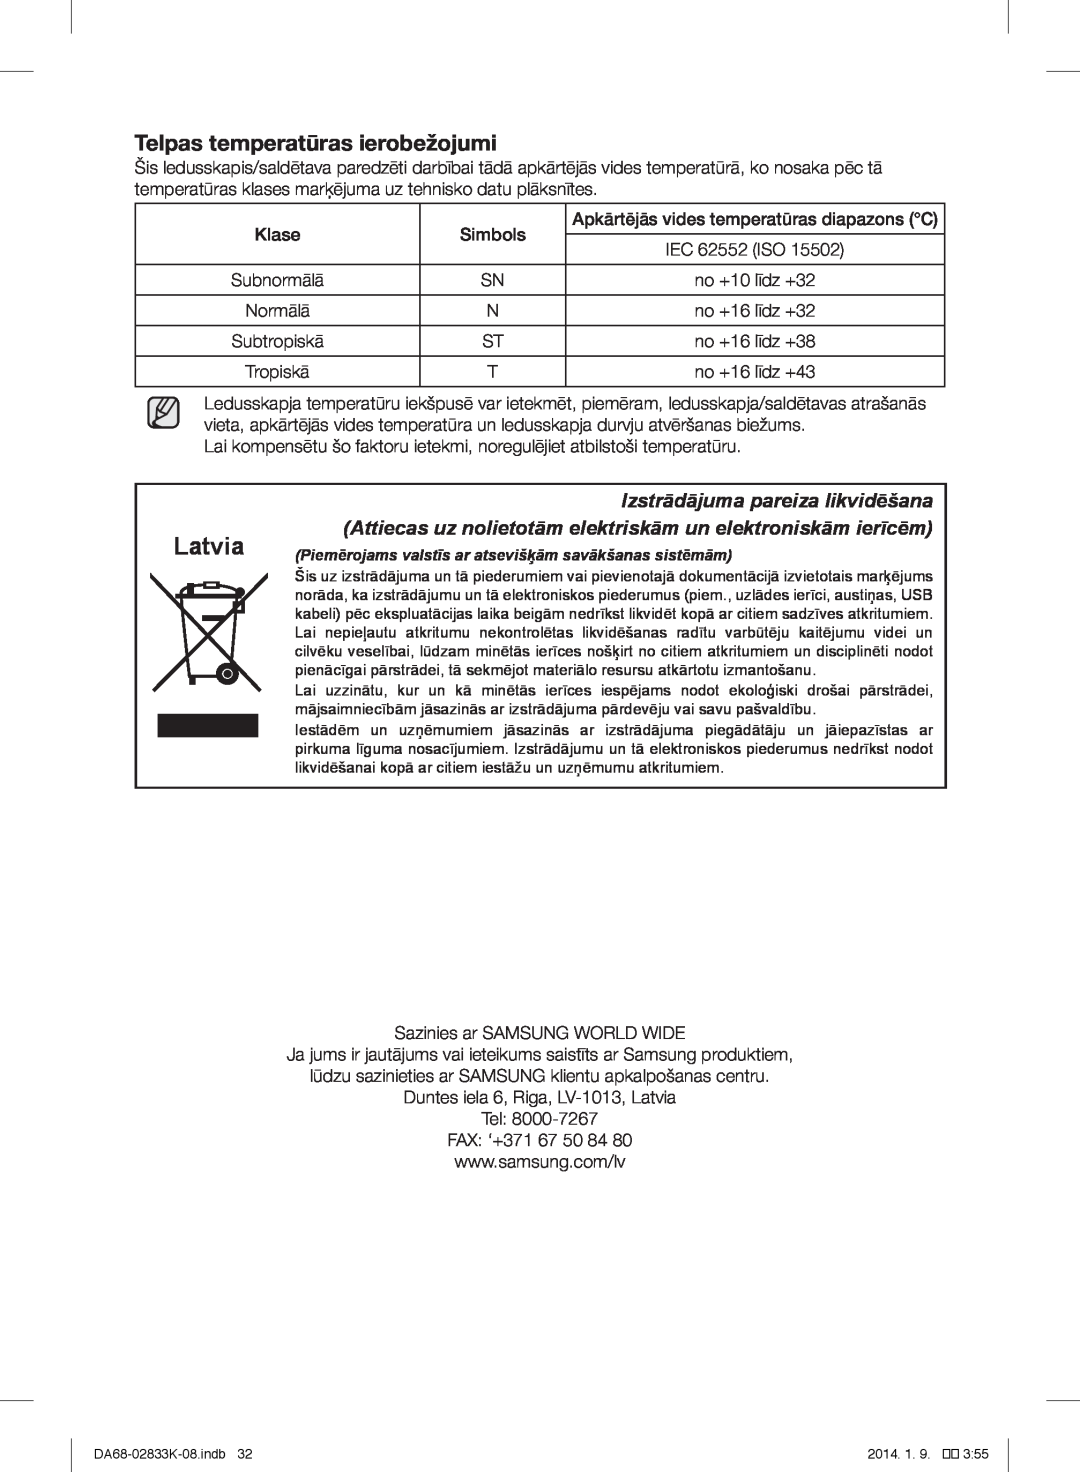 Samsung RB31FERNDEF/EF, RB31HER2BSA/EF manual Latvia, Telpas temperatūras ierobežojumi, Izstrādājuma pareiza likvidēšana 